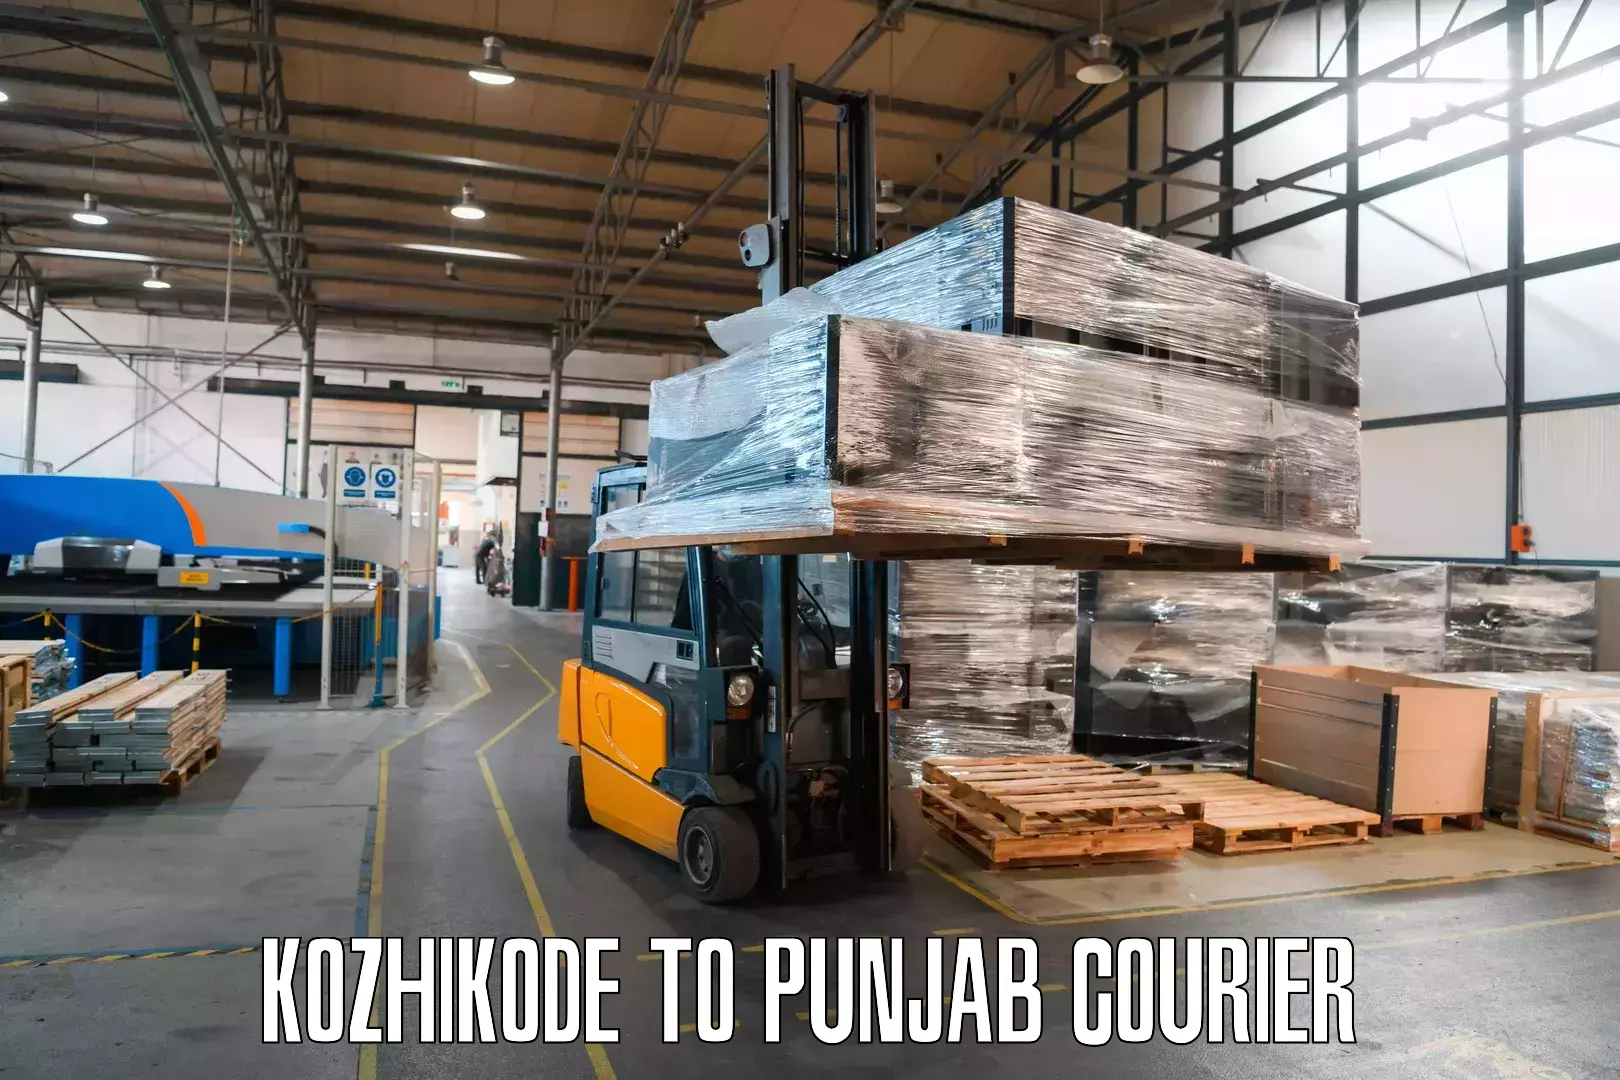 International courier networks Kozhikode to NIT Jallandhar